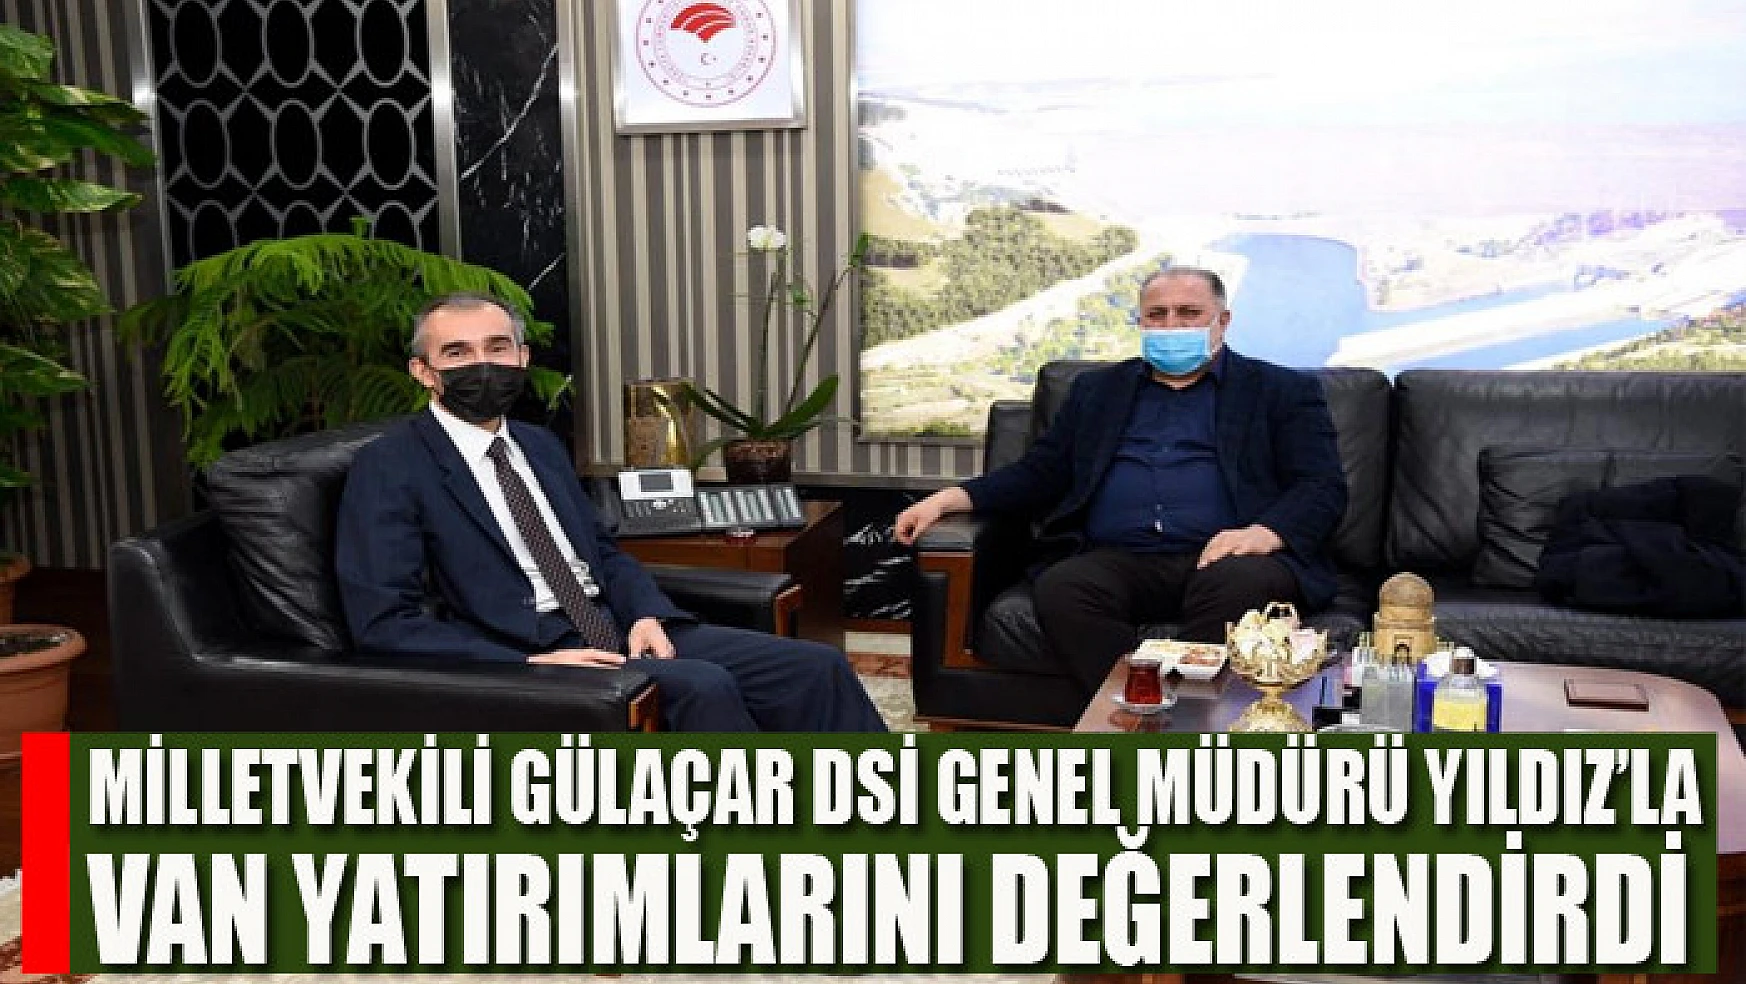 Milletvekili Gülaçar DSİ Genel Müdürü Yıldız'la Van yatırımlarını değerlendirdi